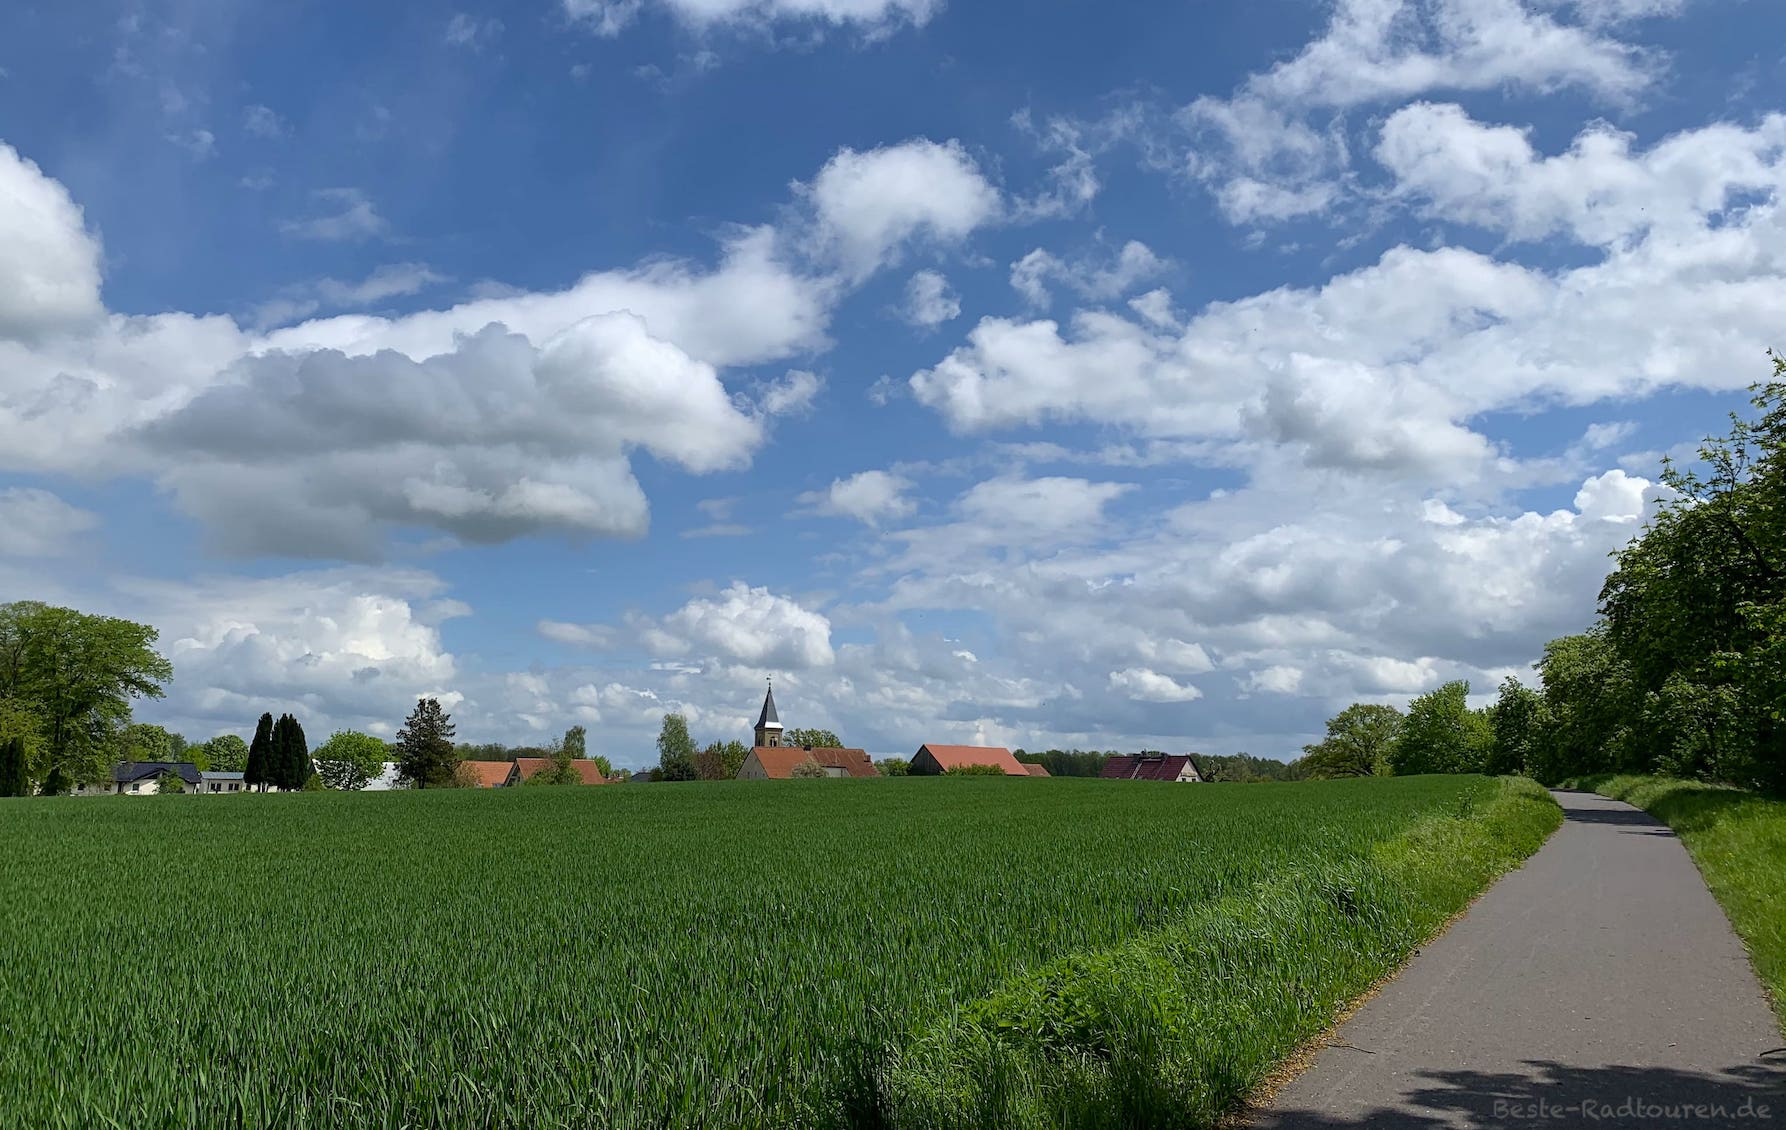 Foto vom Radweg, Blick auf das Dorf Schönfließ, Oberhavel, Mühlenbecker Land